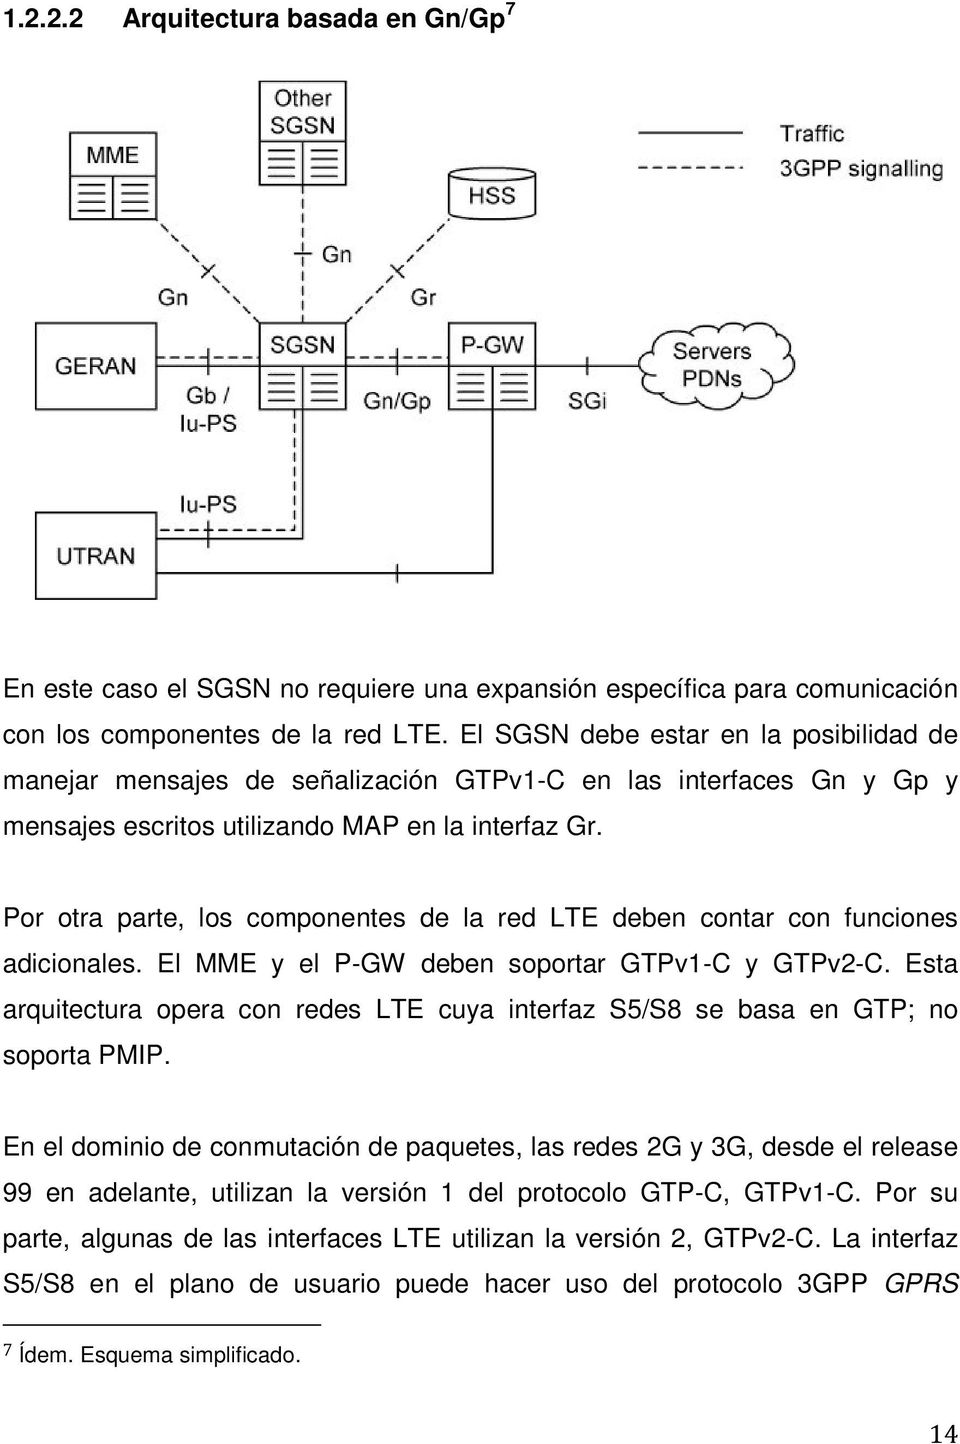 Por otra parte, los componentes de la red LTE deben contar con funciones adicionales. El MME y el P-GW deben soportar GTPv1-C y GTPv2-C.